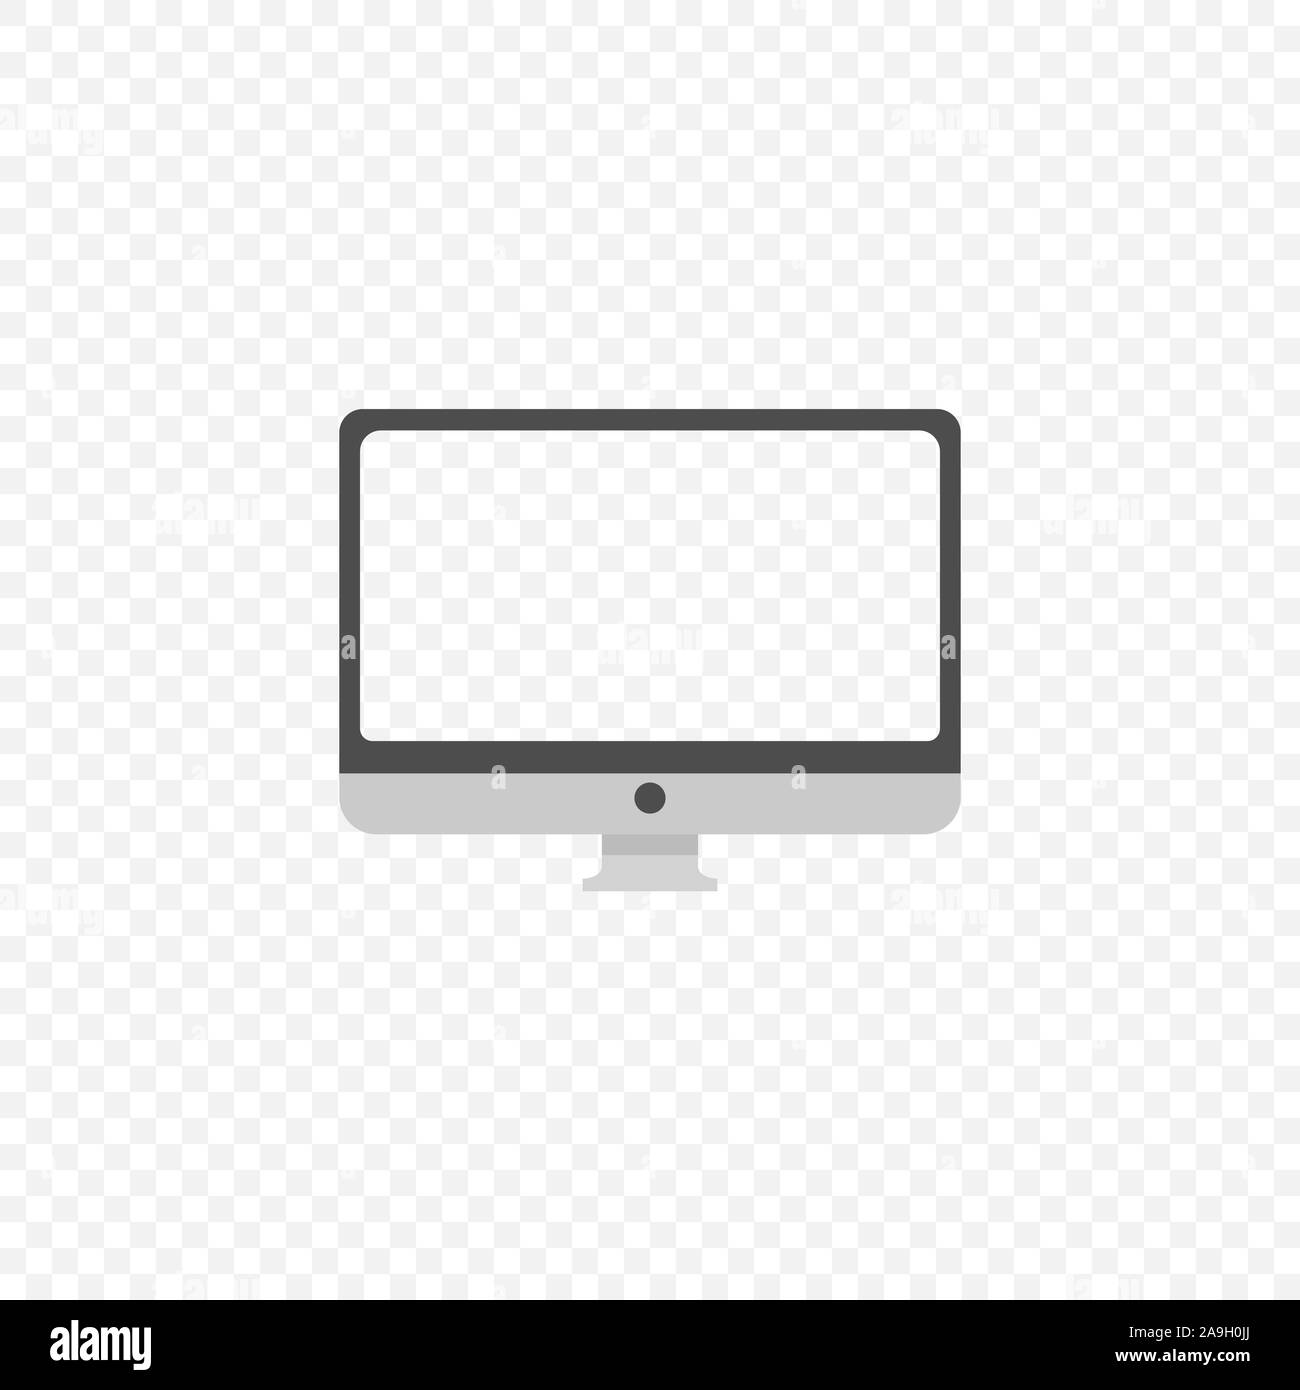 Monitor icon. Desktop computer display mockup, Vector Stock Vector ...